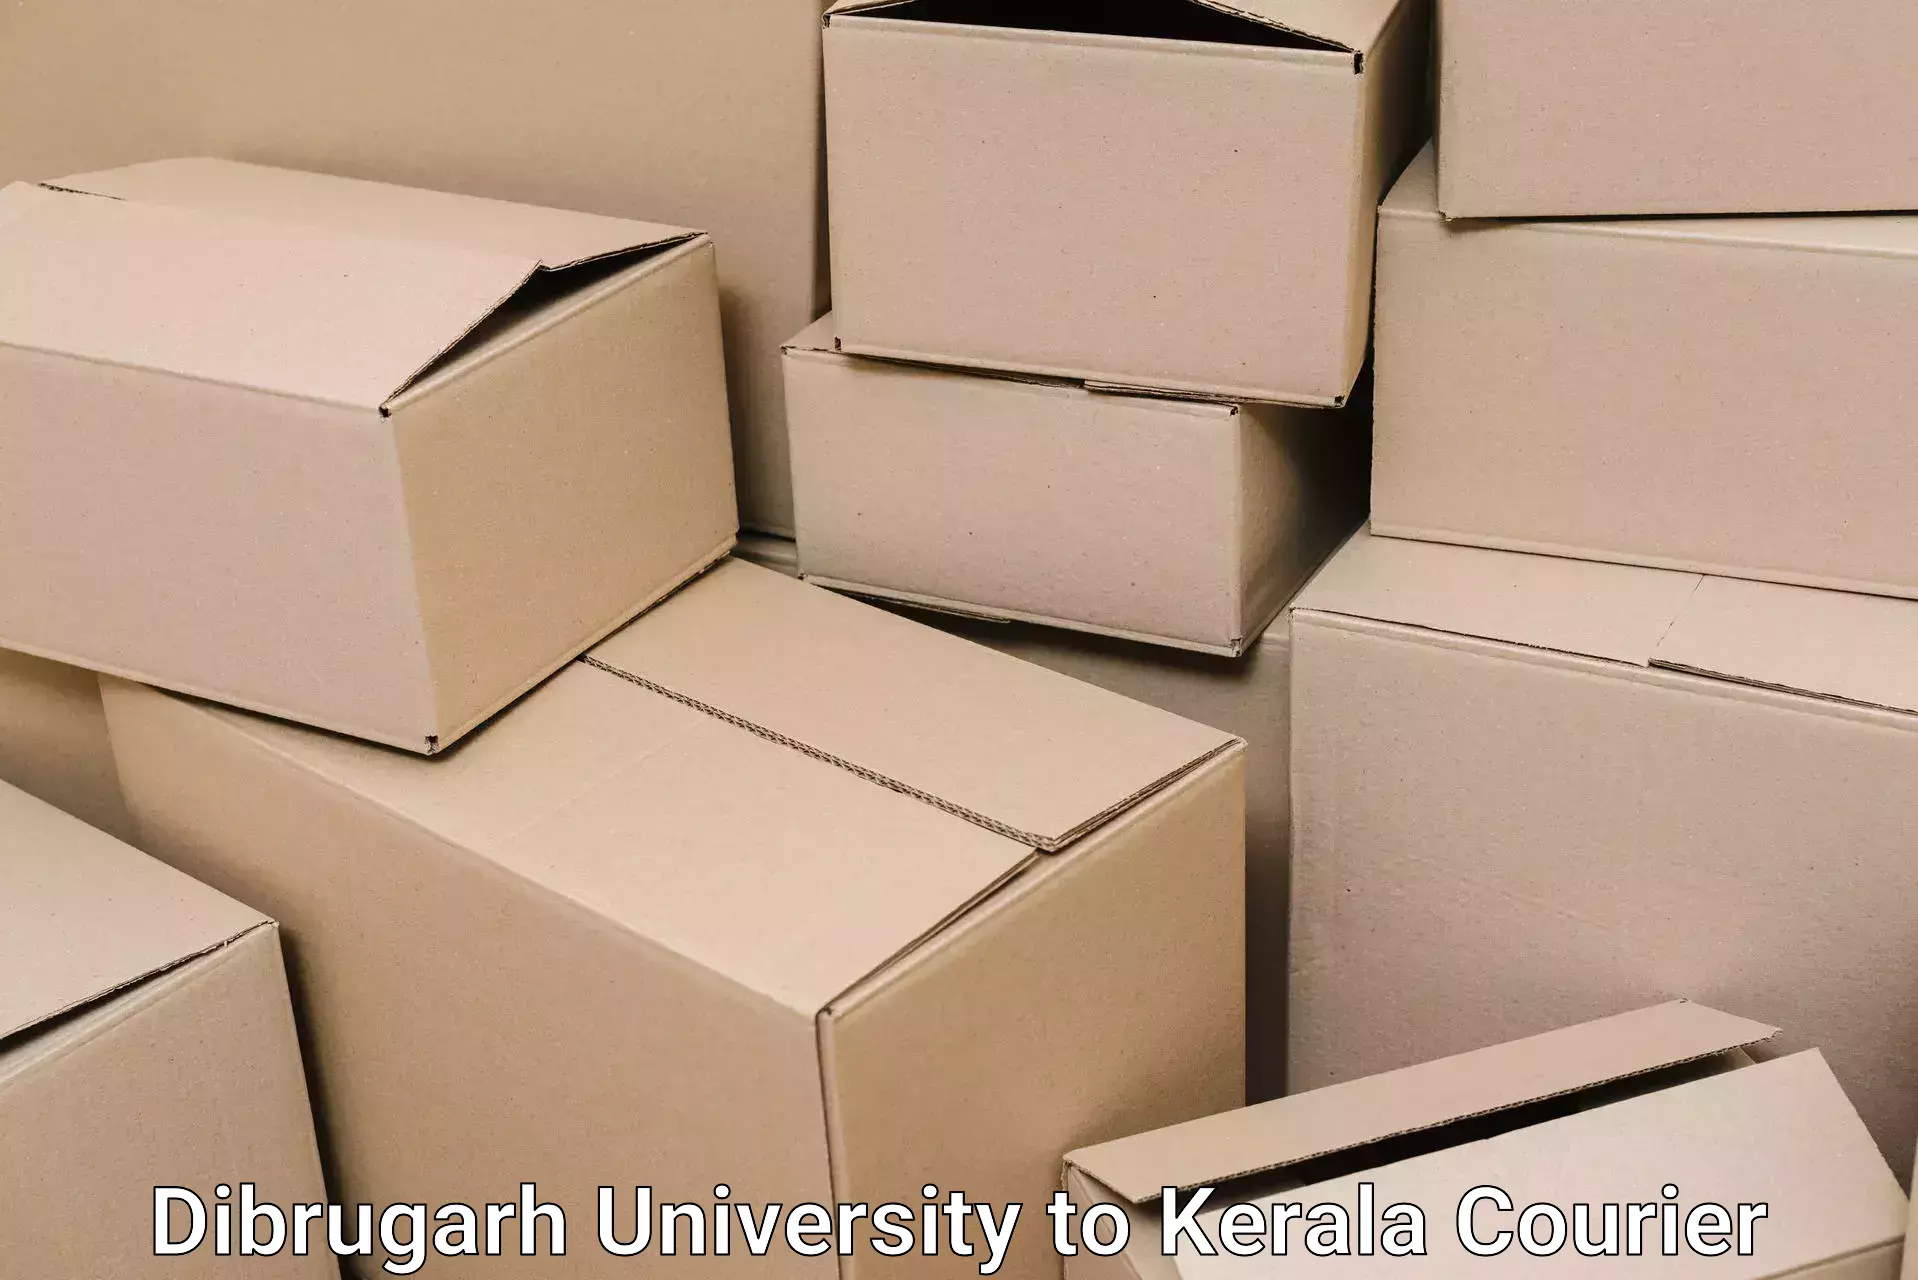 Skilled furniture transporters Dibrugarh University to Kakkayam